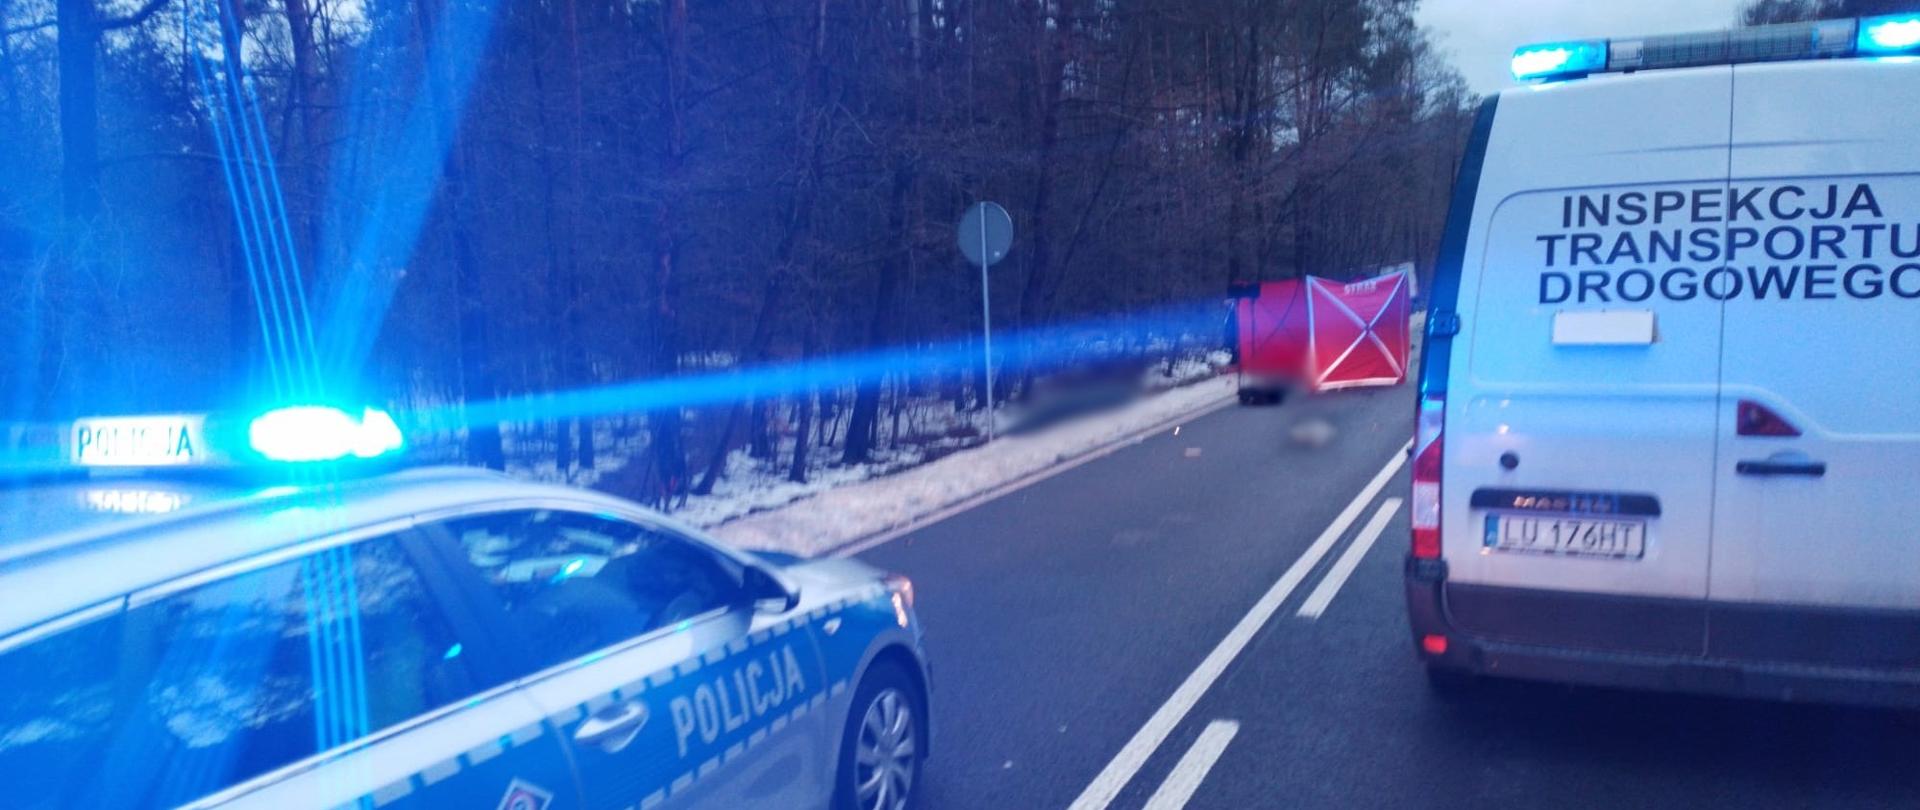 Od lewej: oznakowany radiowóz Policji i stojący obok furgon lubelskiej Inspekcji Transportu Drogowego.